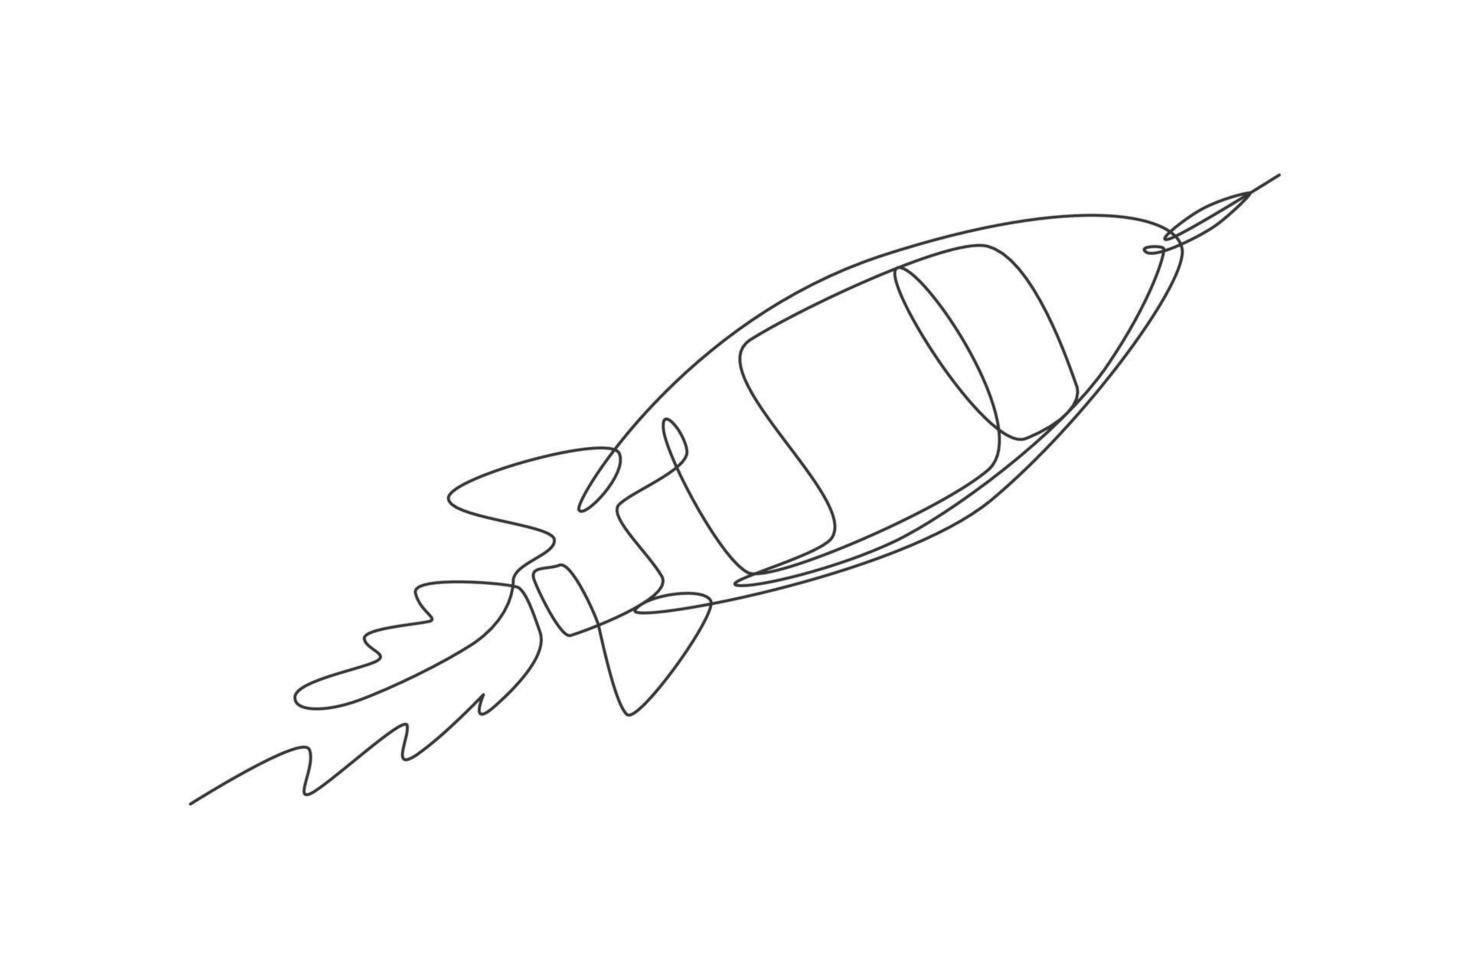 un seul dessin de fusée vintage simple décolle dans l'illustration vectorielle graphique de l'espace. cosmos d'exploration galactique avec concept de vaisseau spatial. conception de dessin de ligne continue moderne vecteur